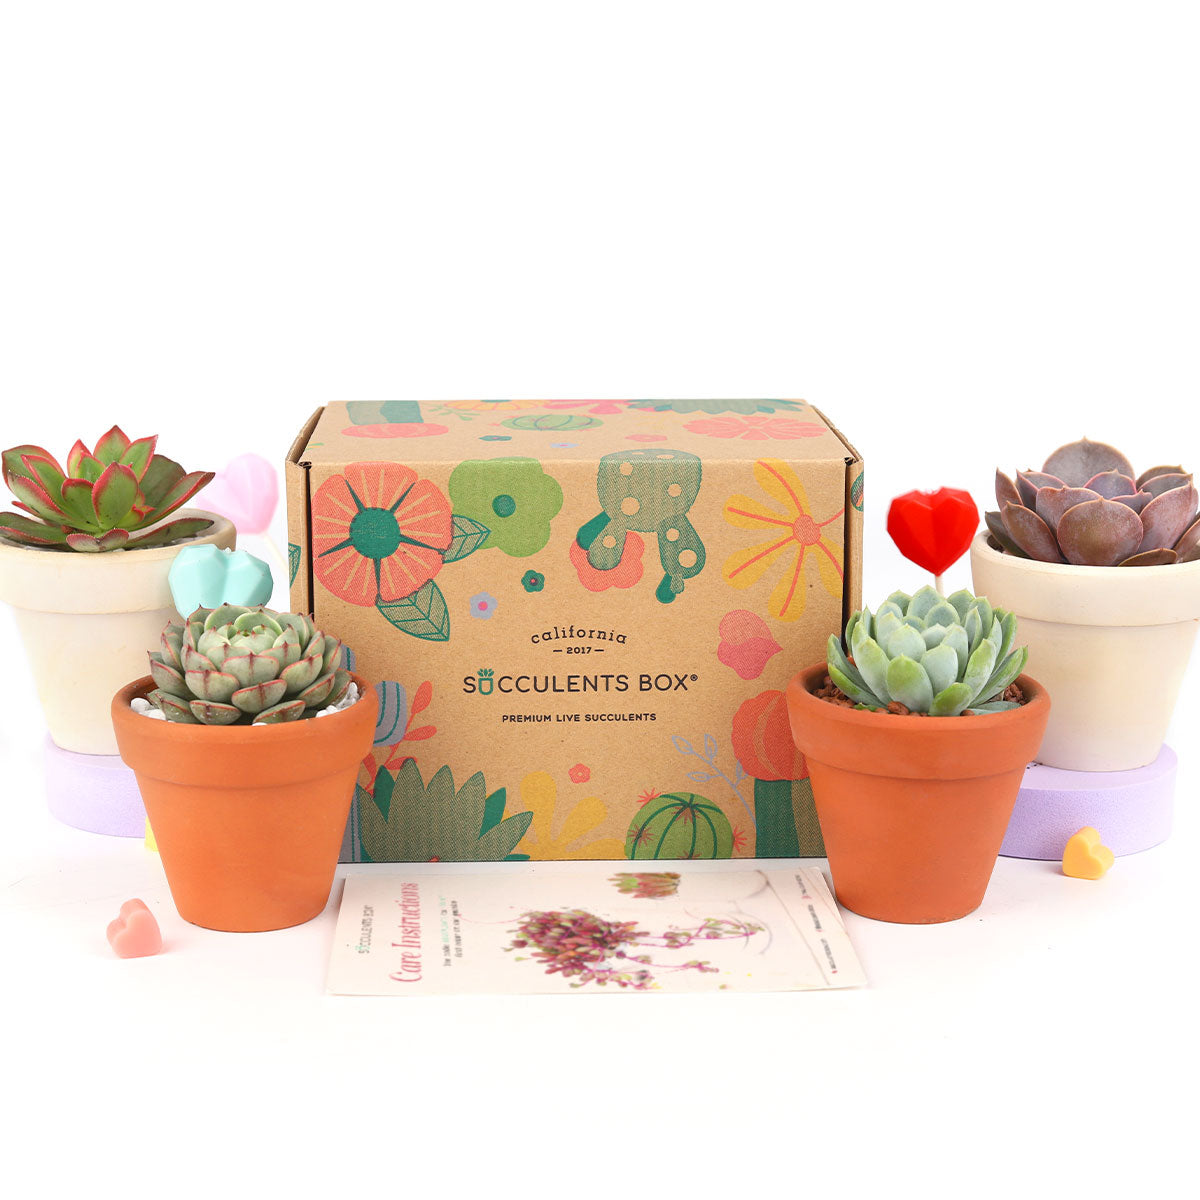 Succulent Subscription Boxes, Succulents Box Monthly, Succulents for Sale